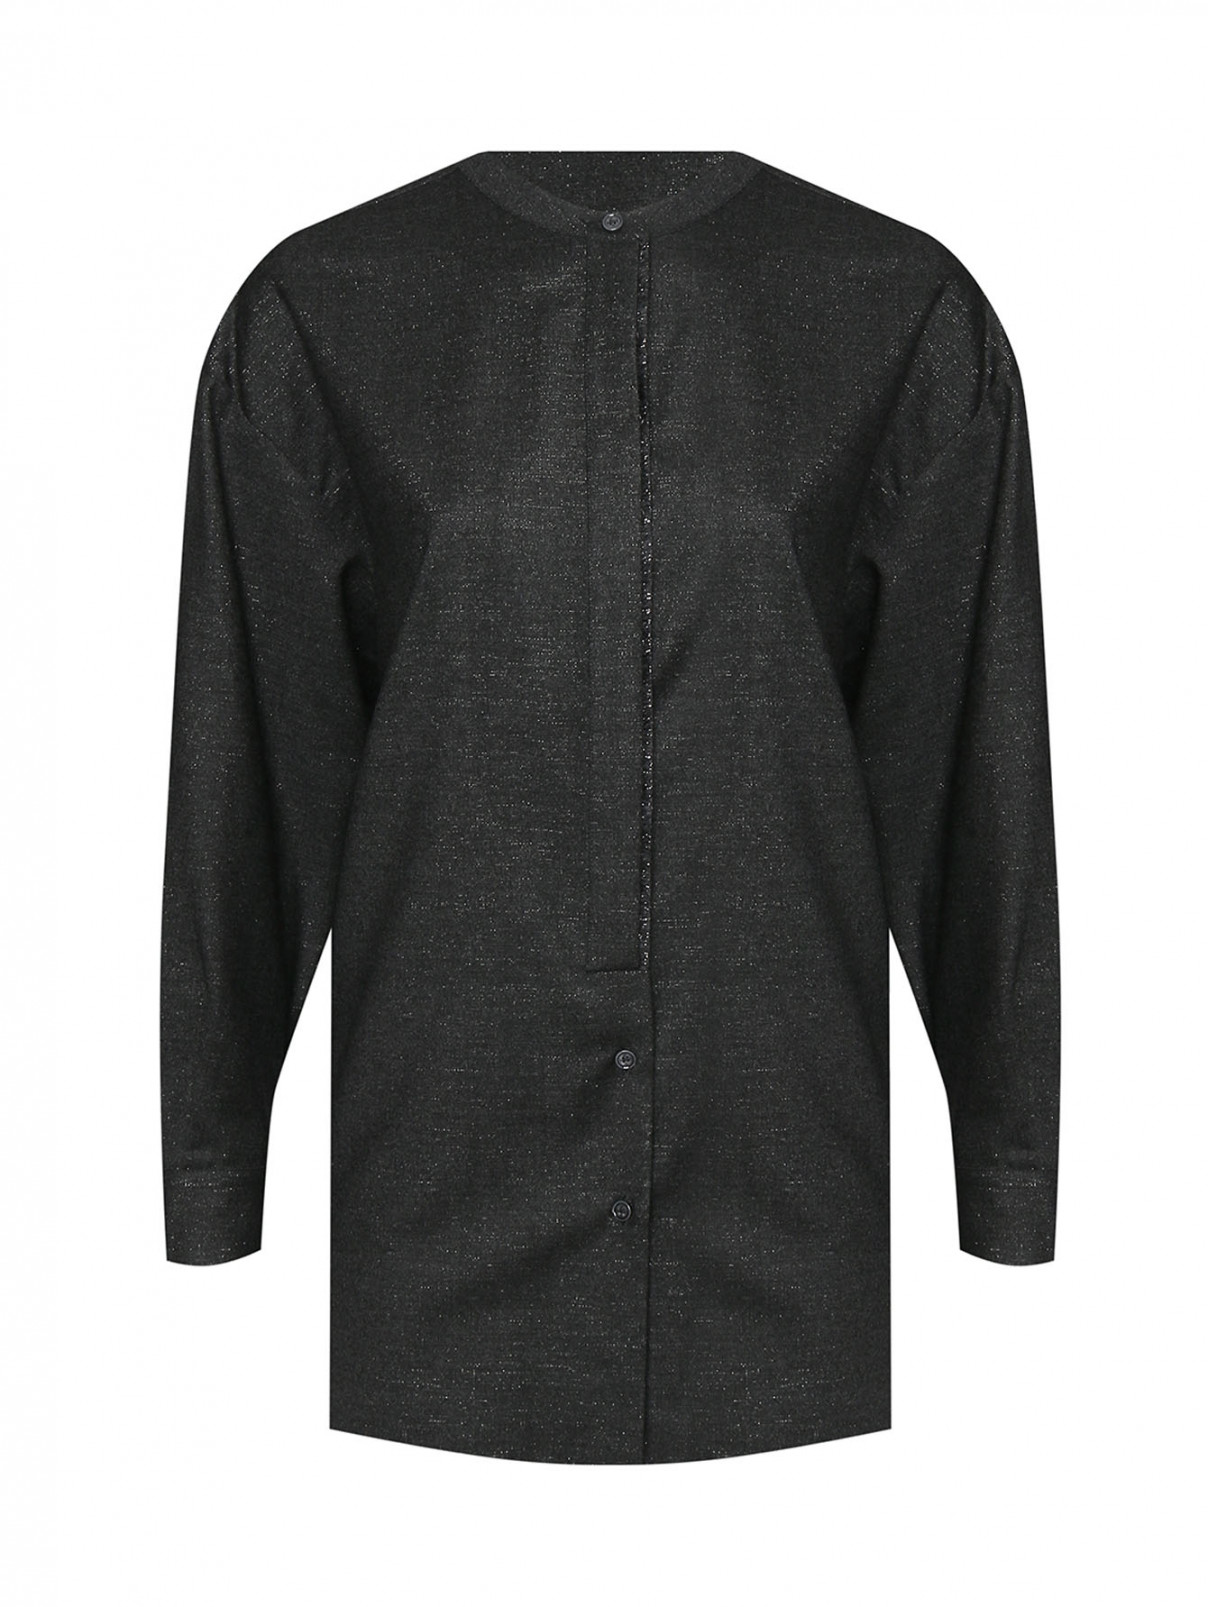 Рубашка из смешанной шерсти на пуговицах Marina Rinaldi  –  Общий вид  – Цвет:  Серый